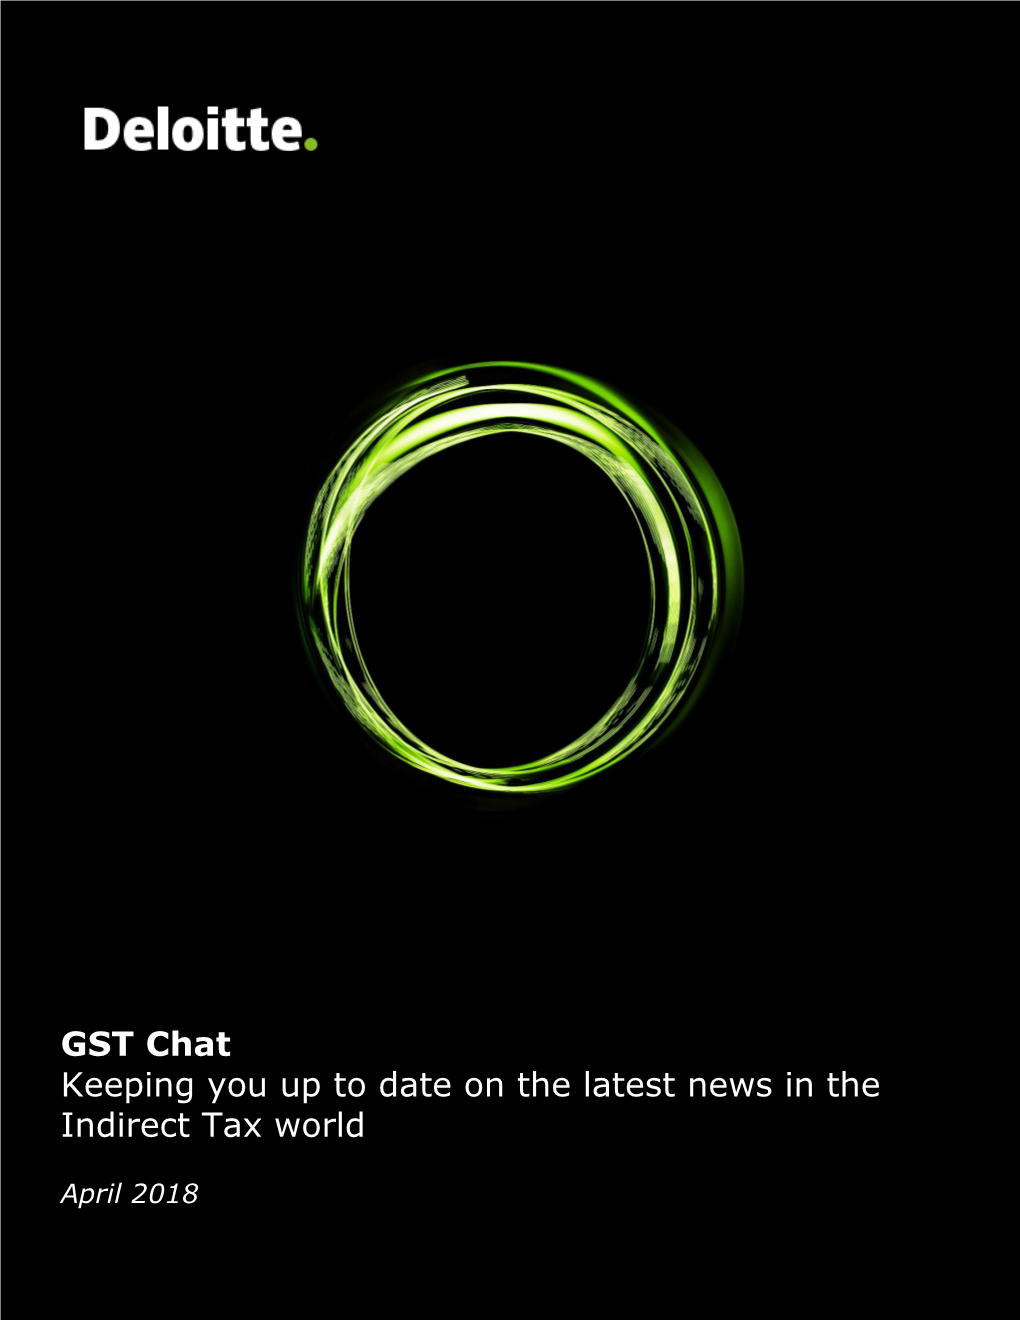 GST Chat – April 2018